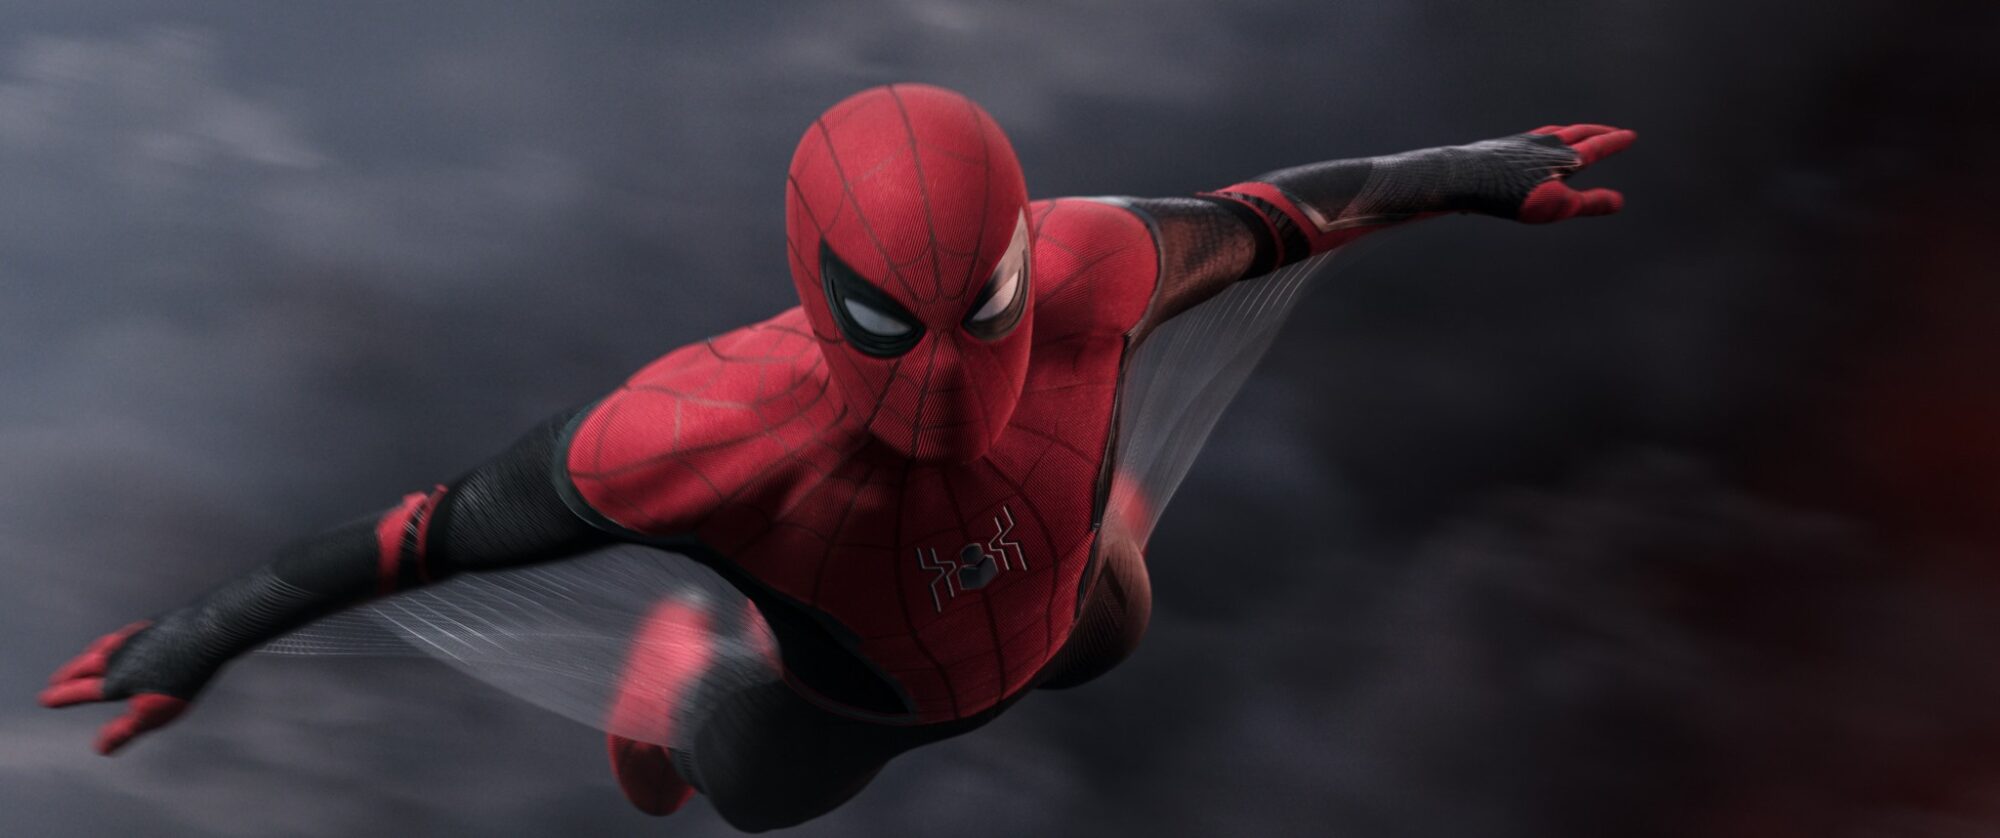 Spider-Man è tornato nel MCU? Un sito risponde a questa domanda thumbnail